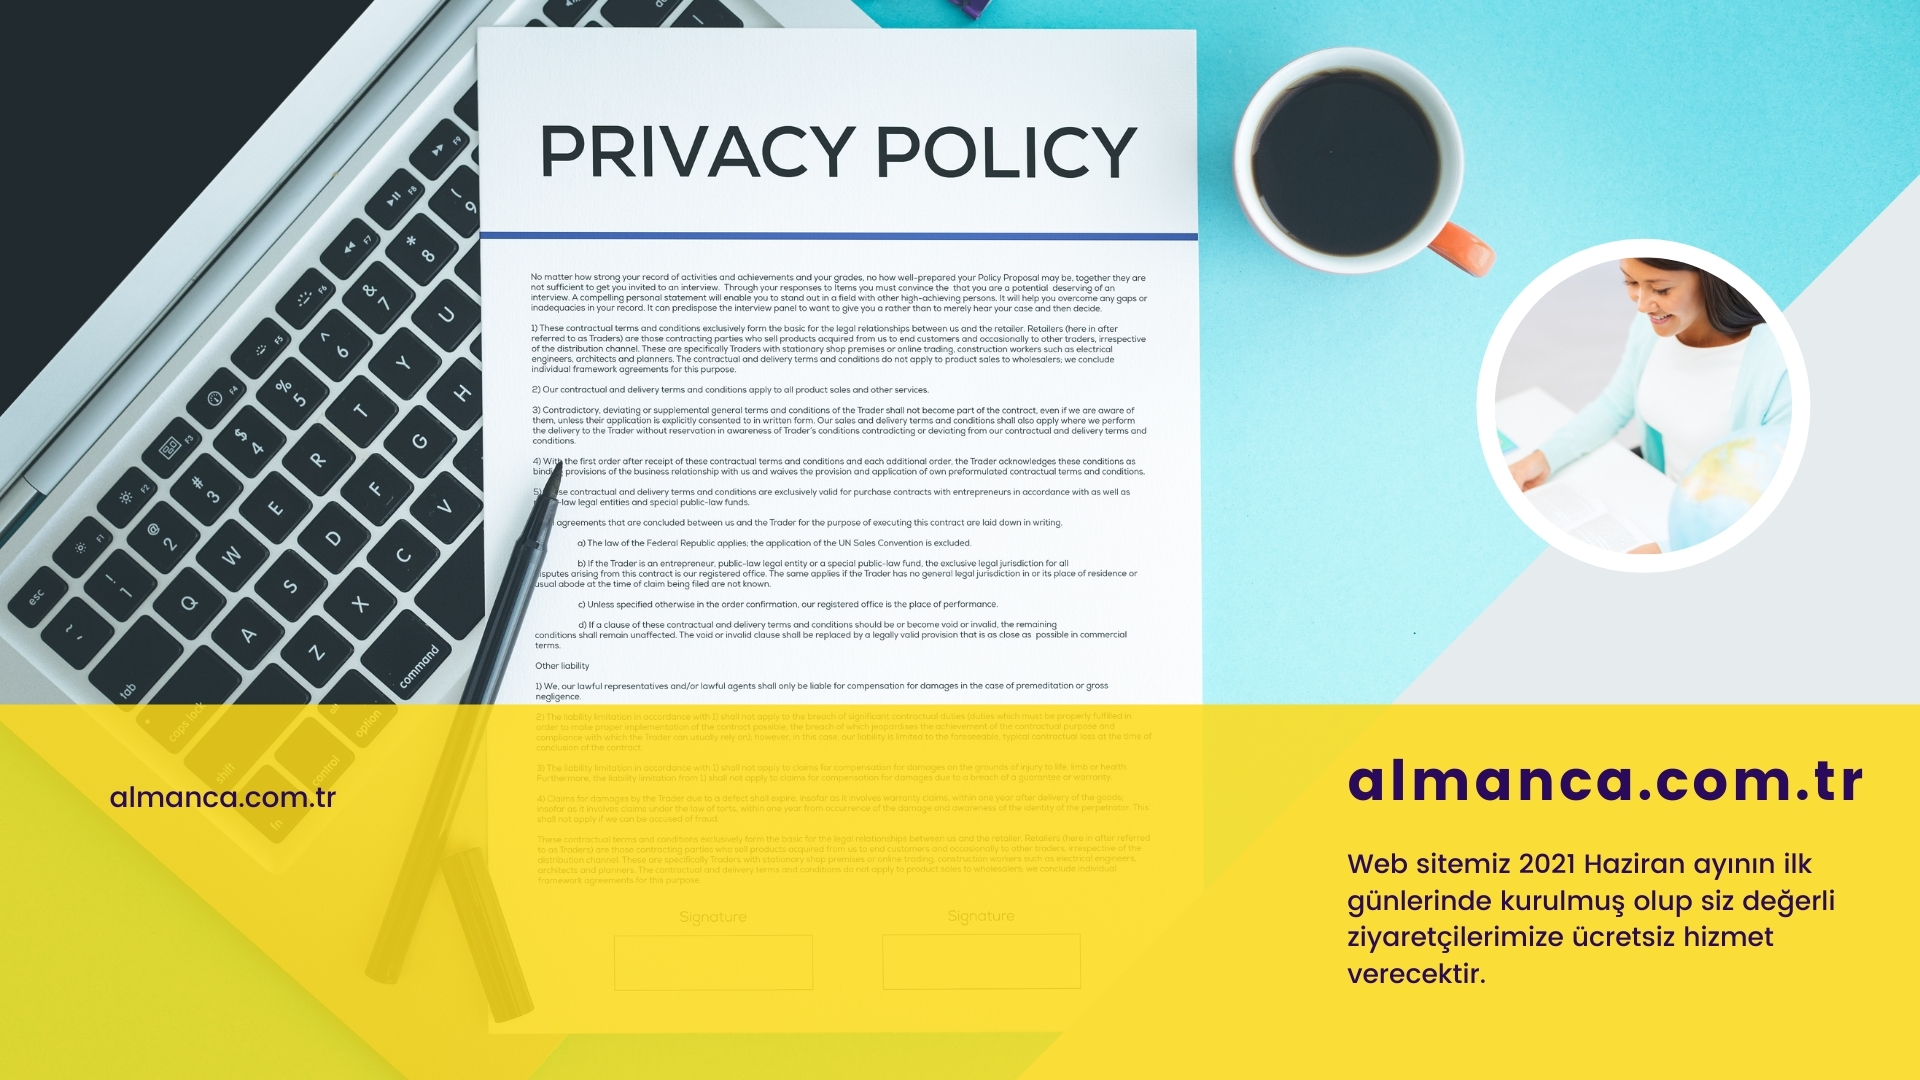 Gizlilik-politikası-privacy-policy